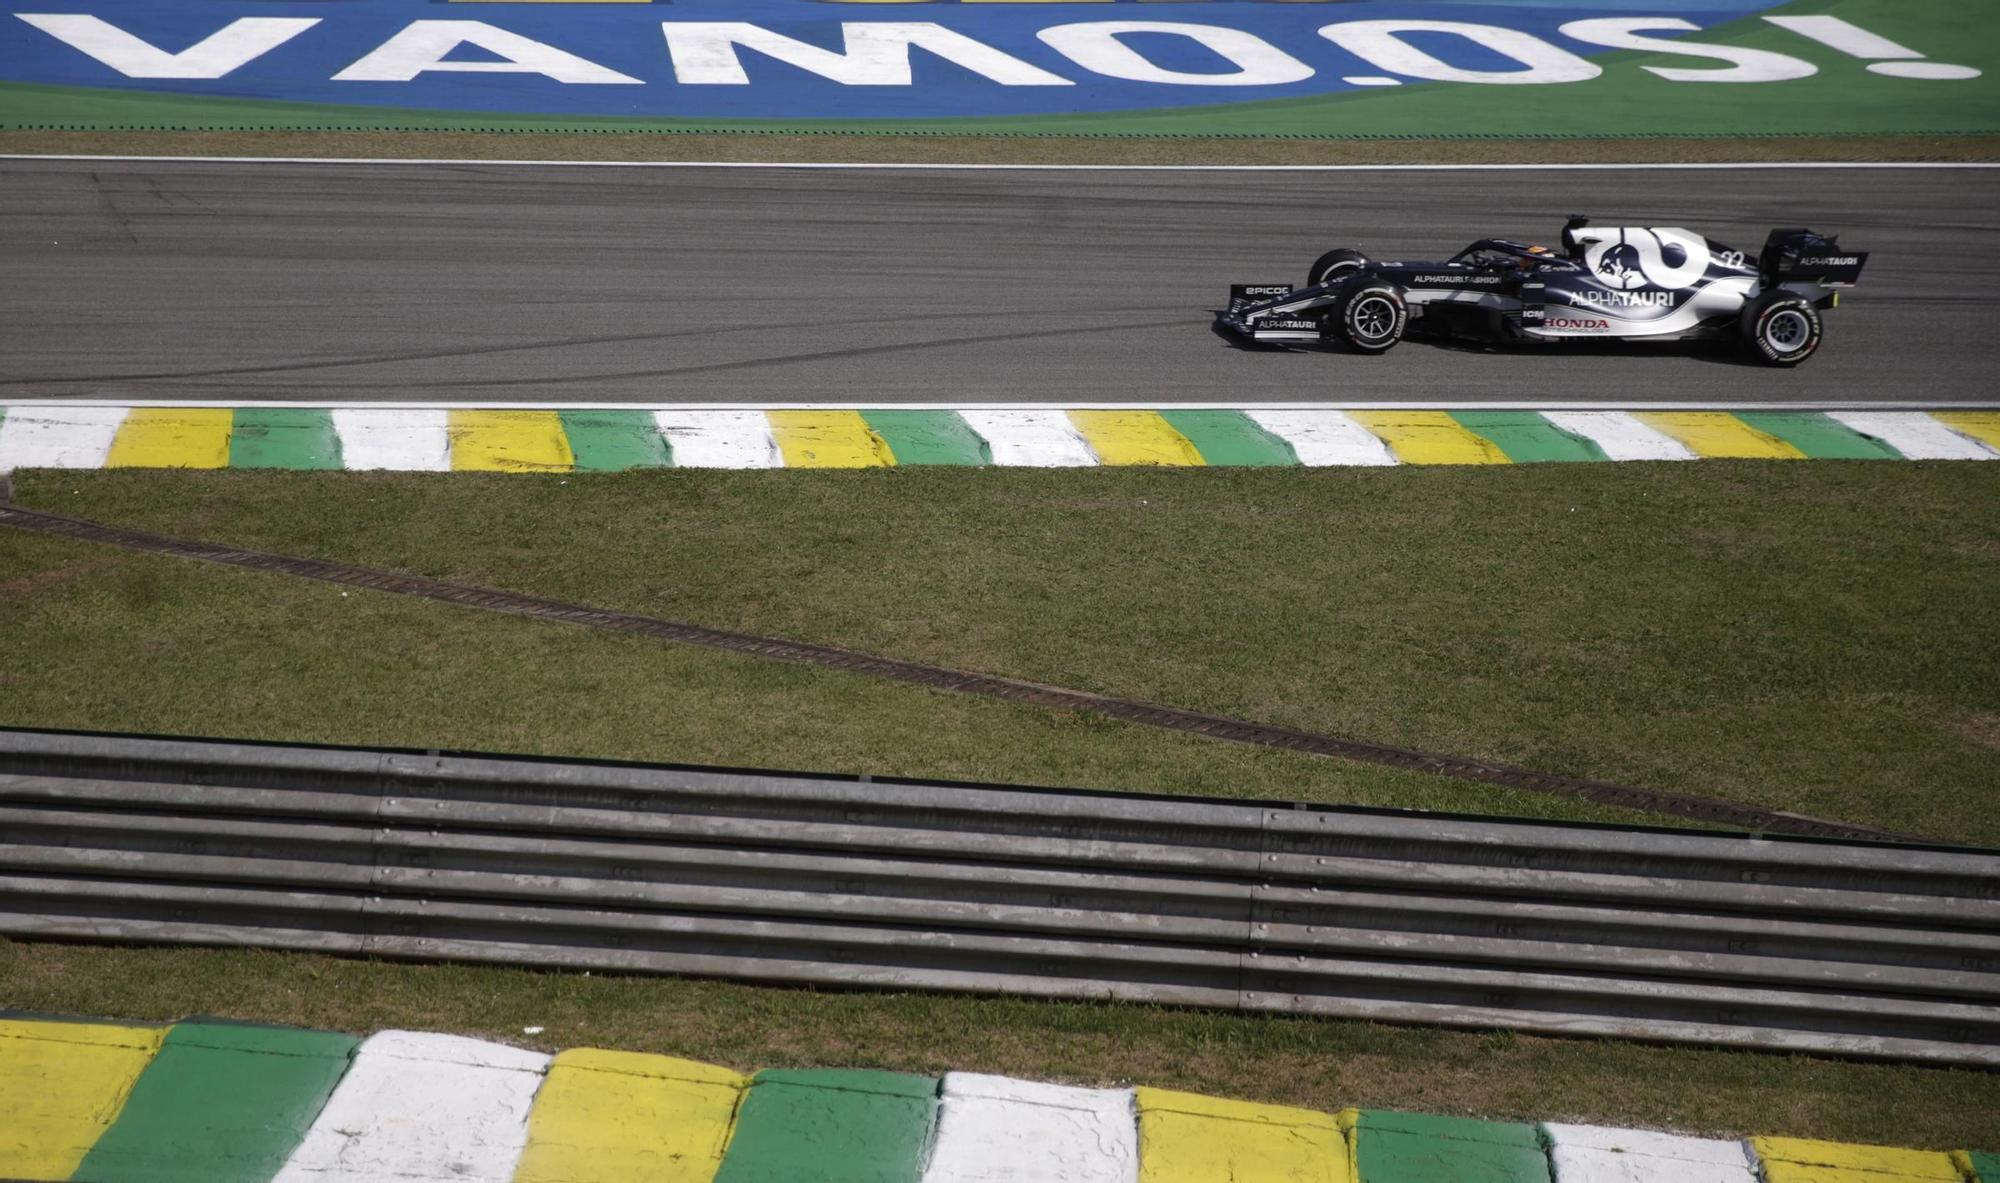 Brazilian Grand Prix (132019708).jpg